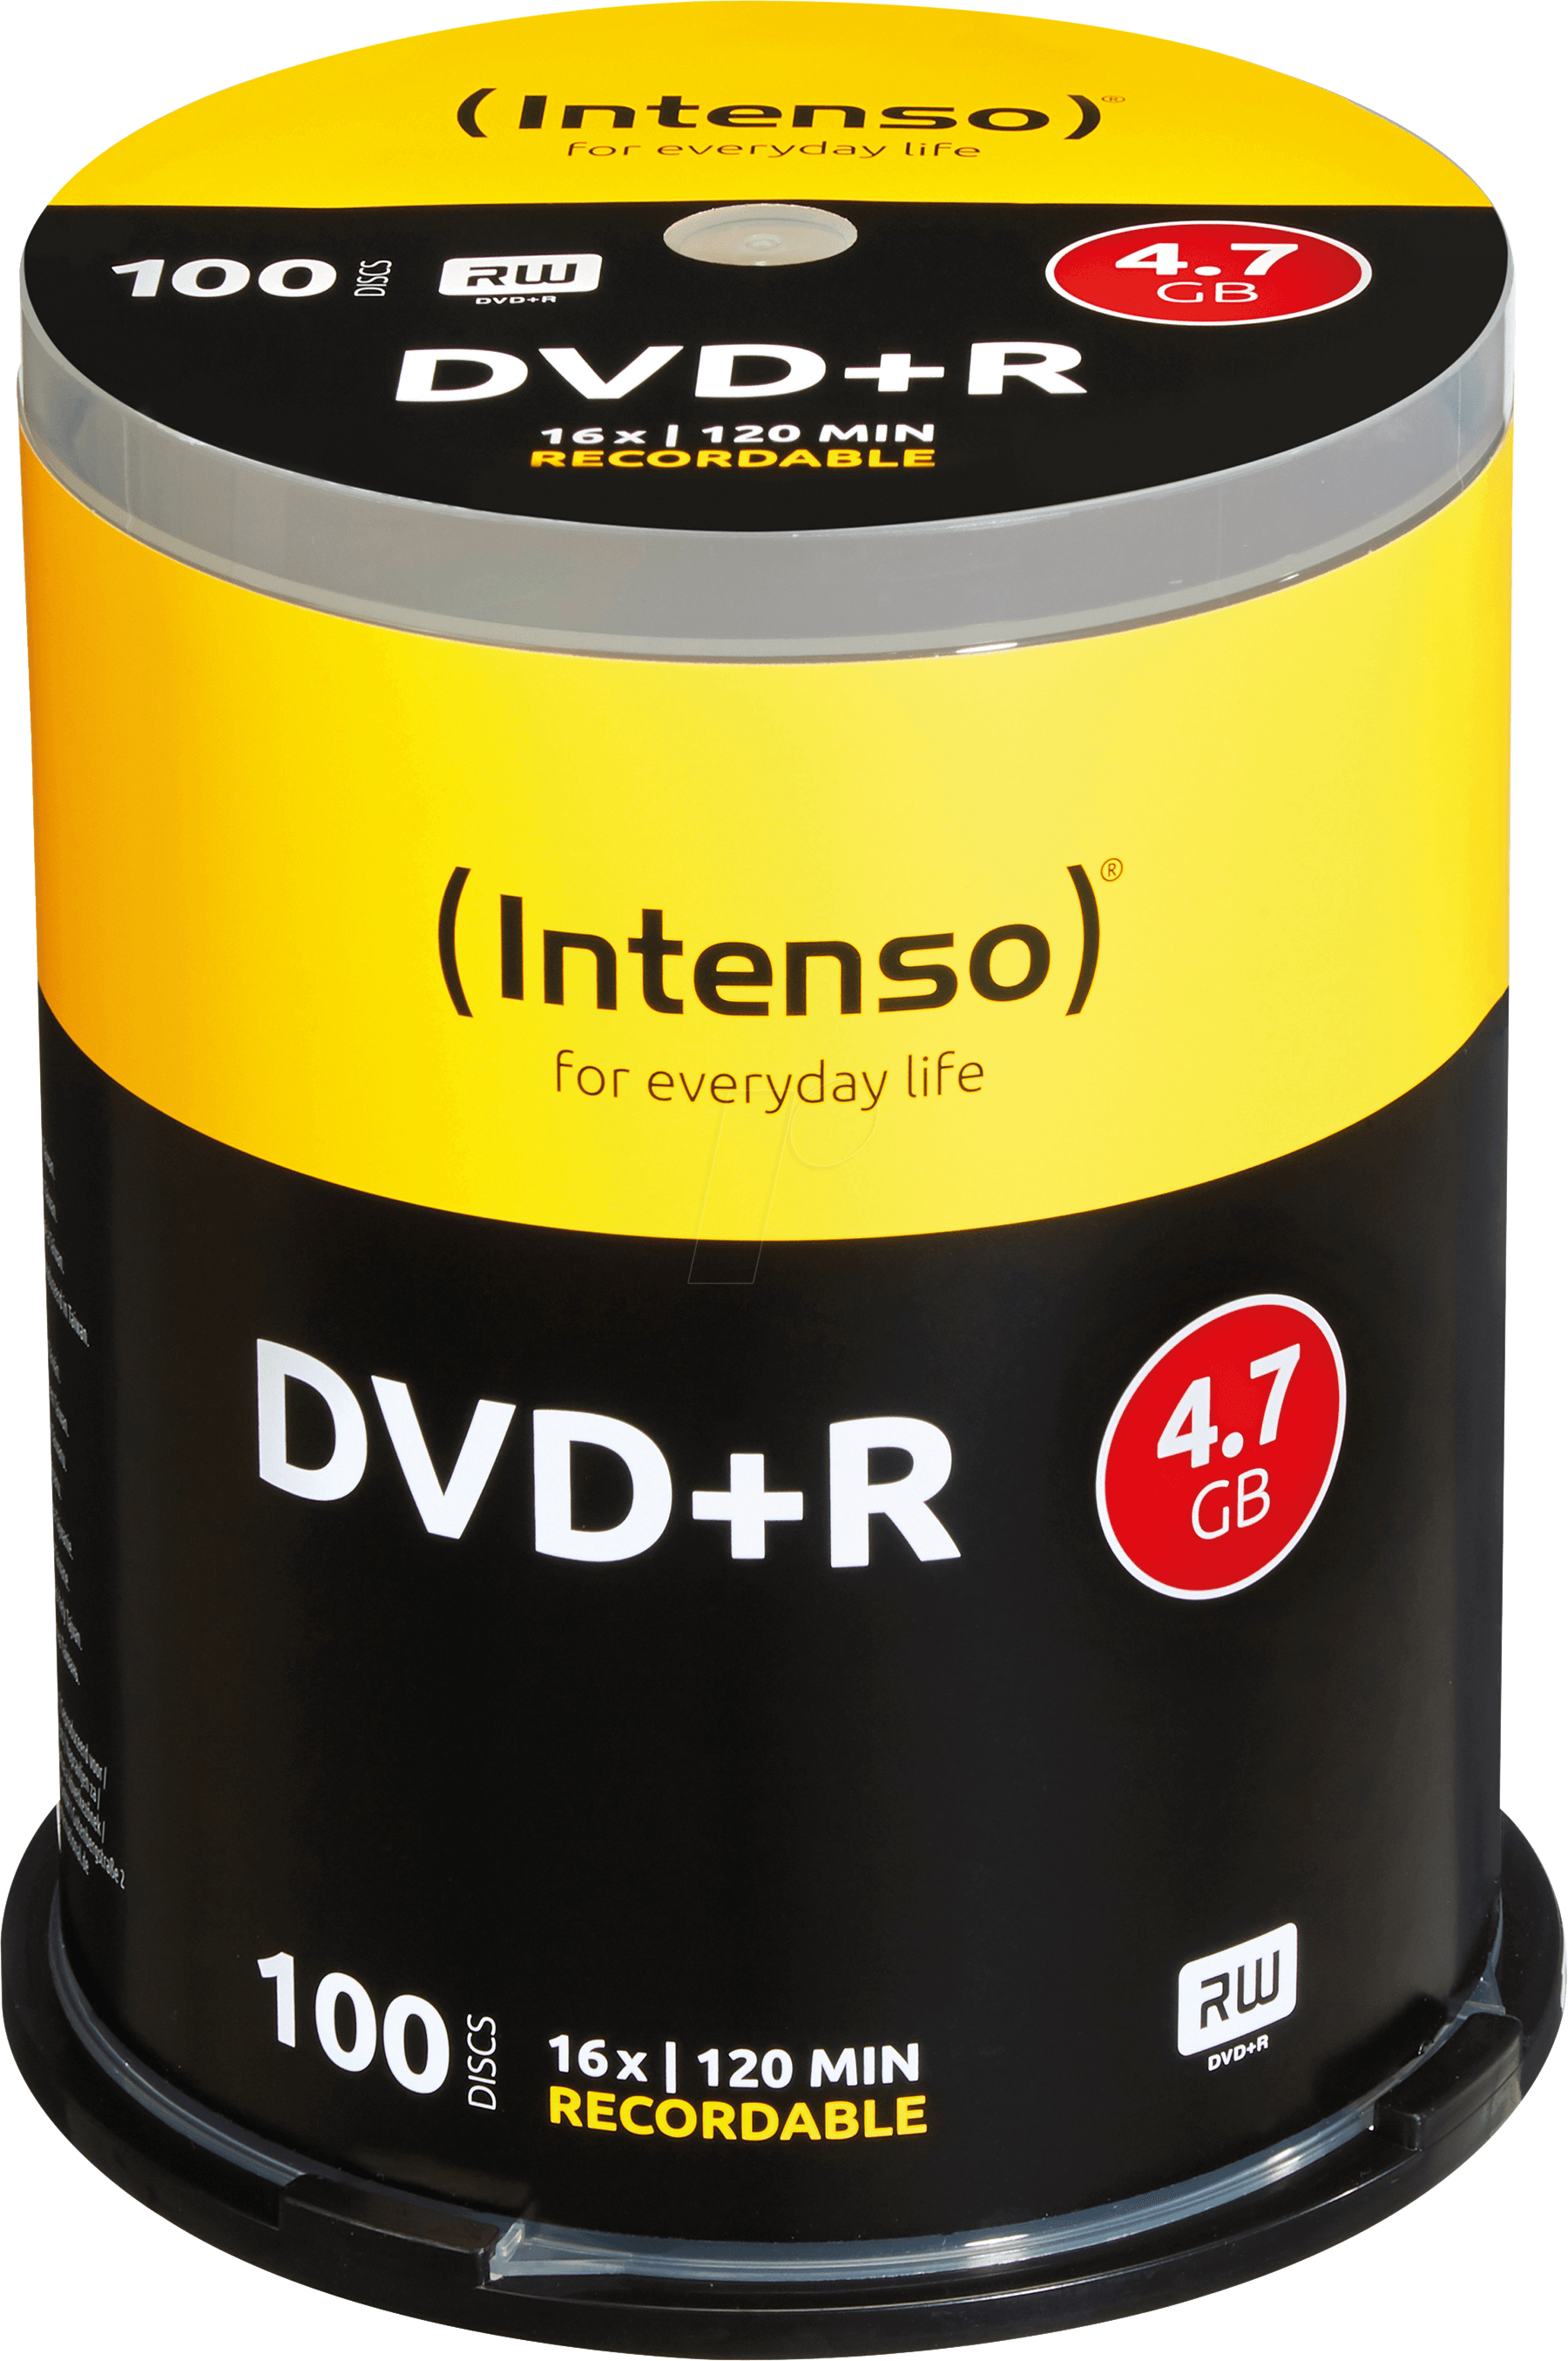 DVD+R4,7 INT100 - Intenso DVD+R 4,7GB, 100-er CakeBox von Intenso